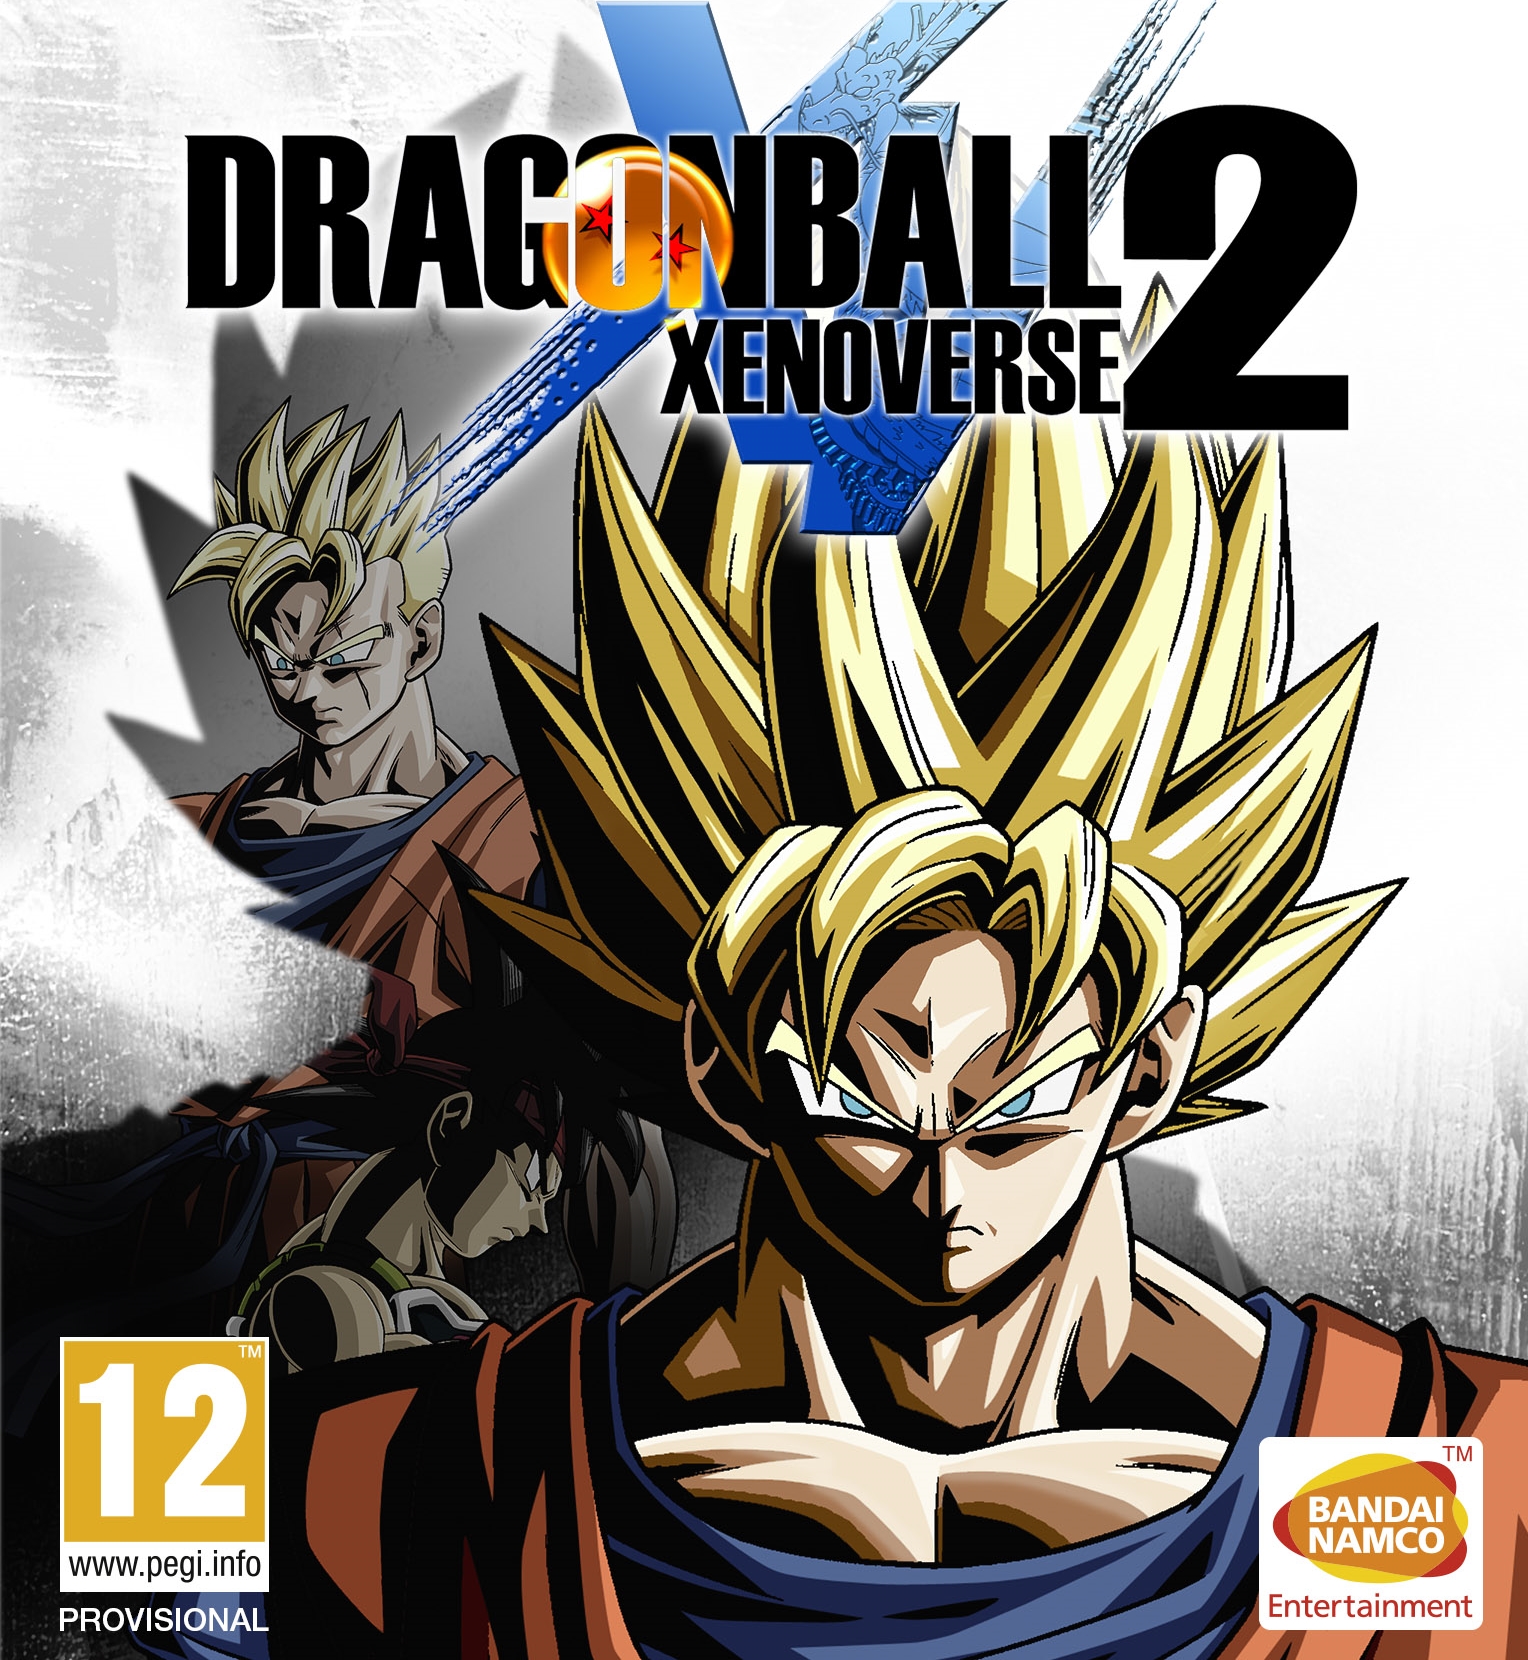 Reviews Dragon Ball Xenoverse 2 Special Edition